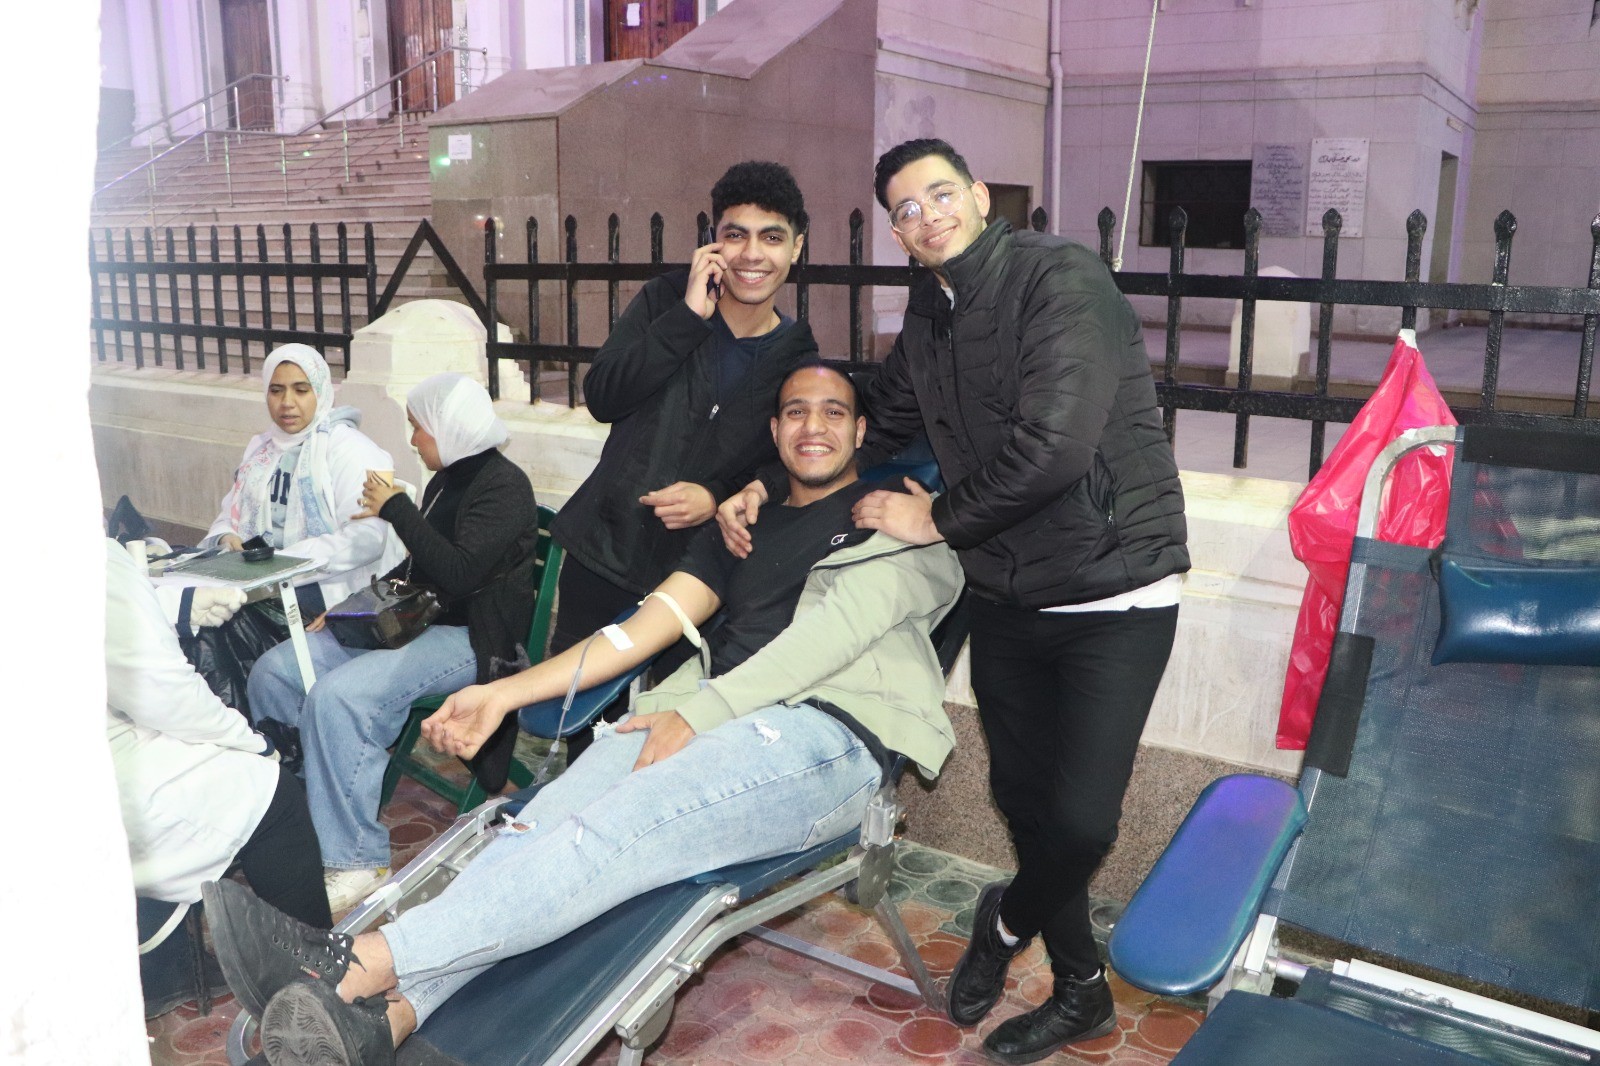 تجاوب أهالي بورفؤاد مع حملة مؤسسة مشكاة نور للتبرع بالدم بالتعاون مع بنك الدم الإقليمي